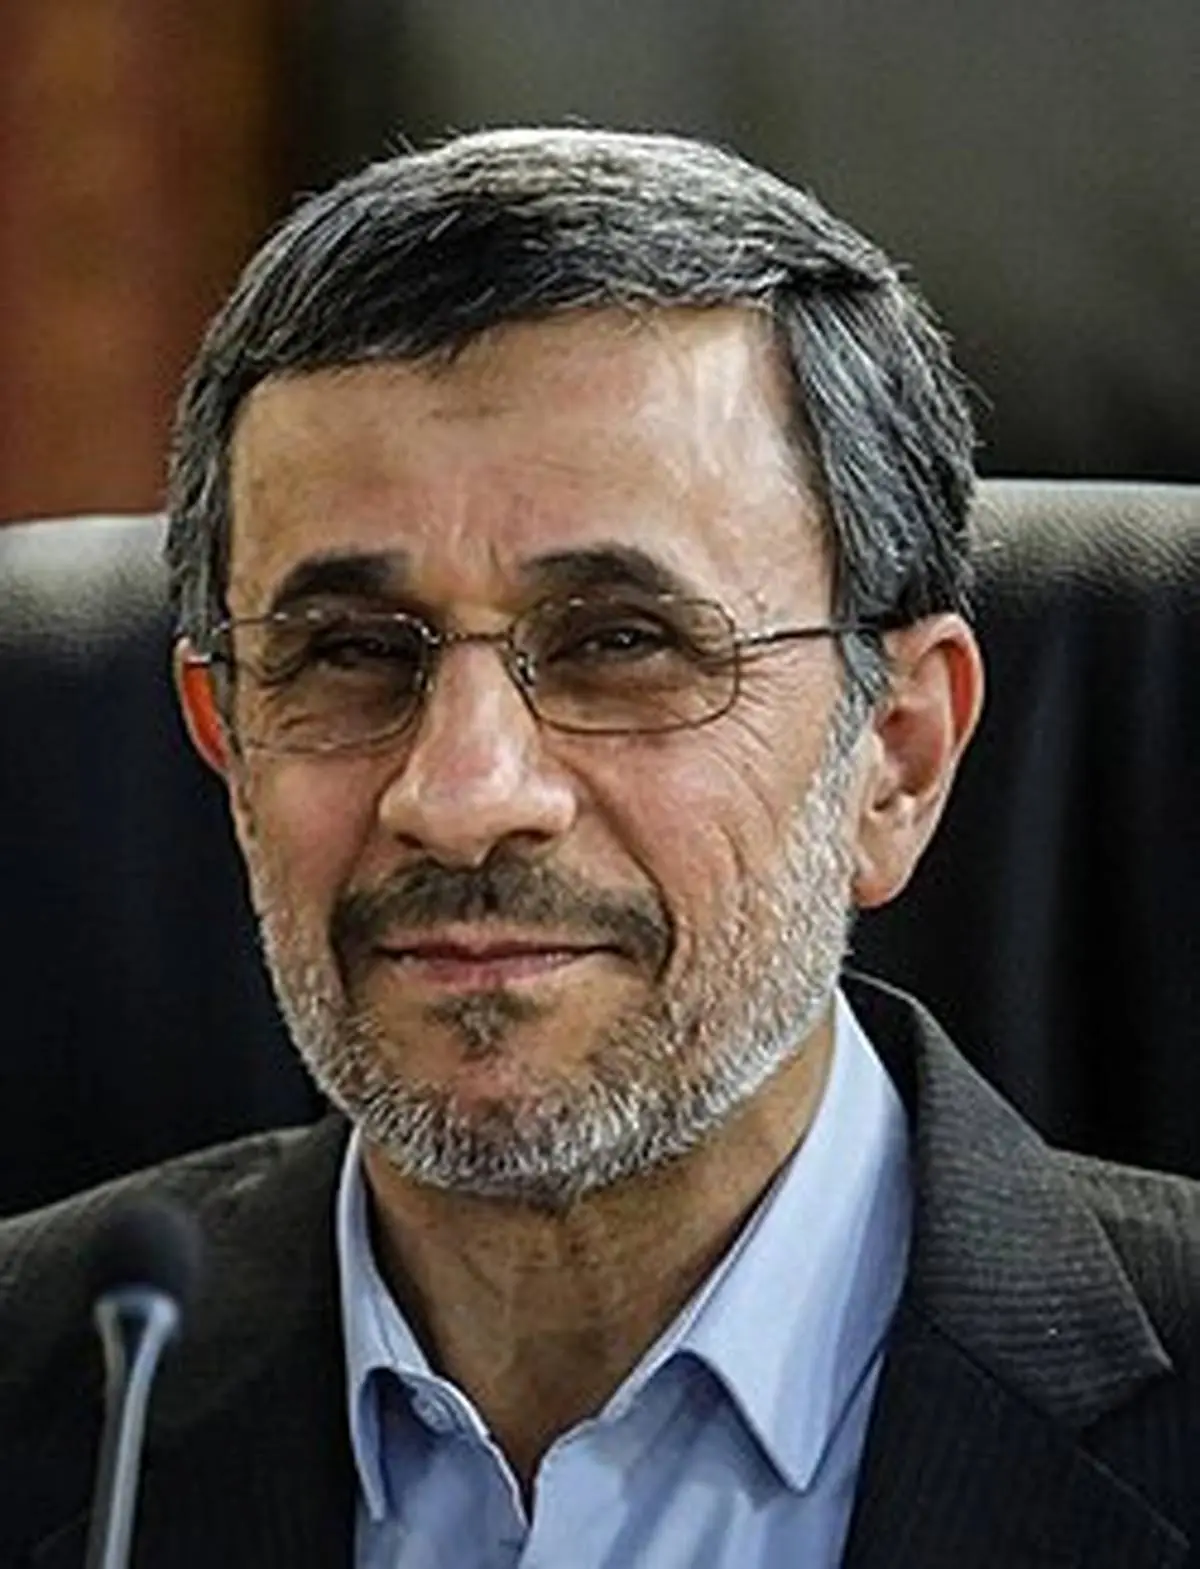 سخنان احمدی نژاد در مورد مسکن مهر : قرار بود مسکن مهر رایگان باشد+ فیلم